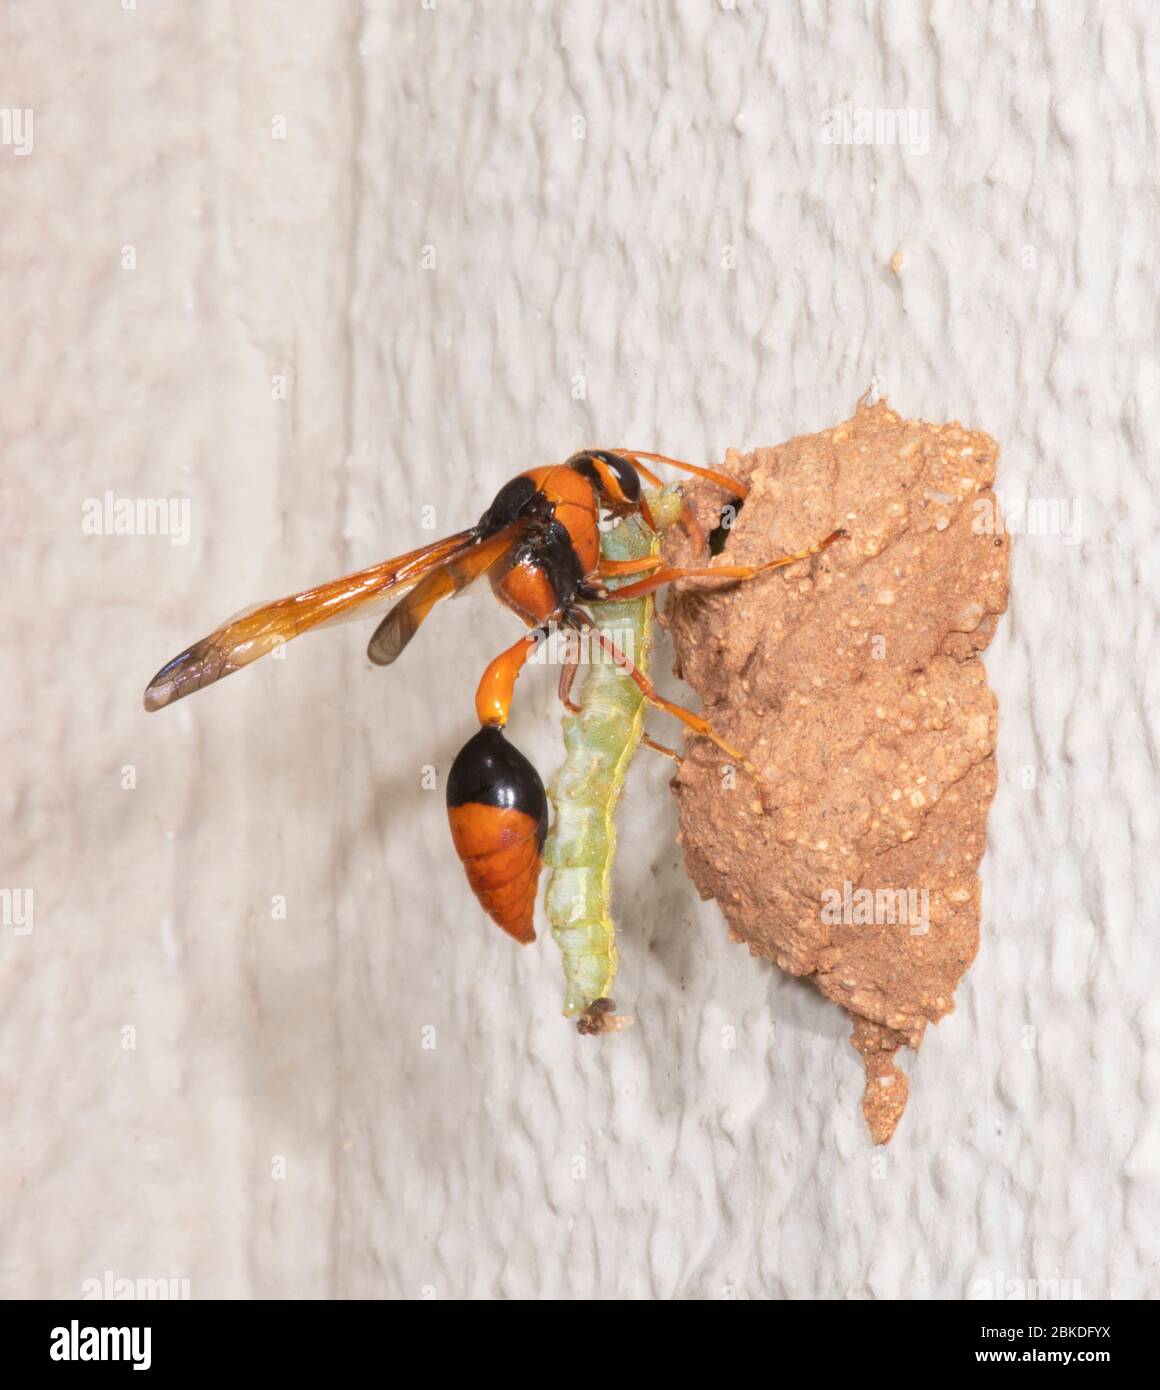 Orange Potter Wasp (Eumenes latreilli) mit einer gelähmten Raupe zu ihrem Nest, Alice Springs, Northern Territory, NT, Australien Stockfoto